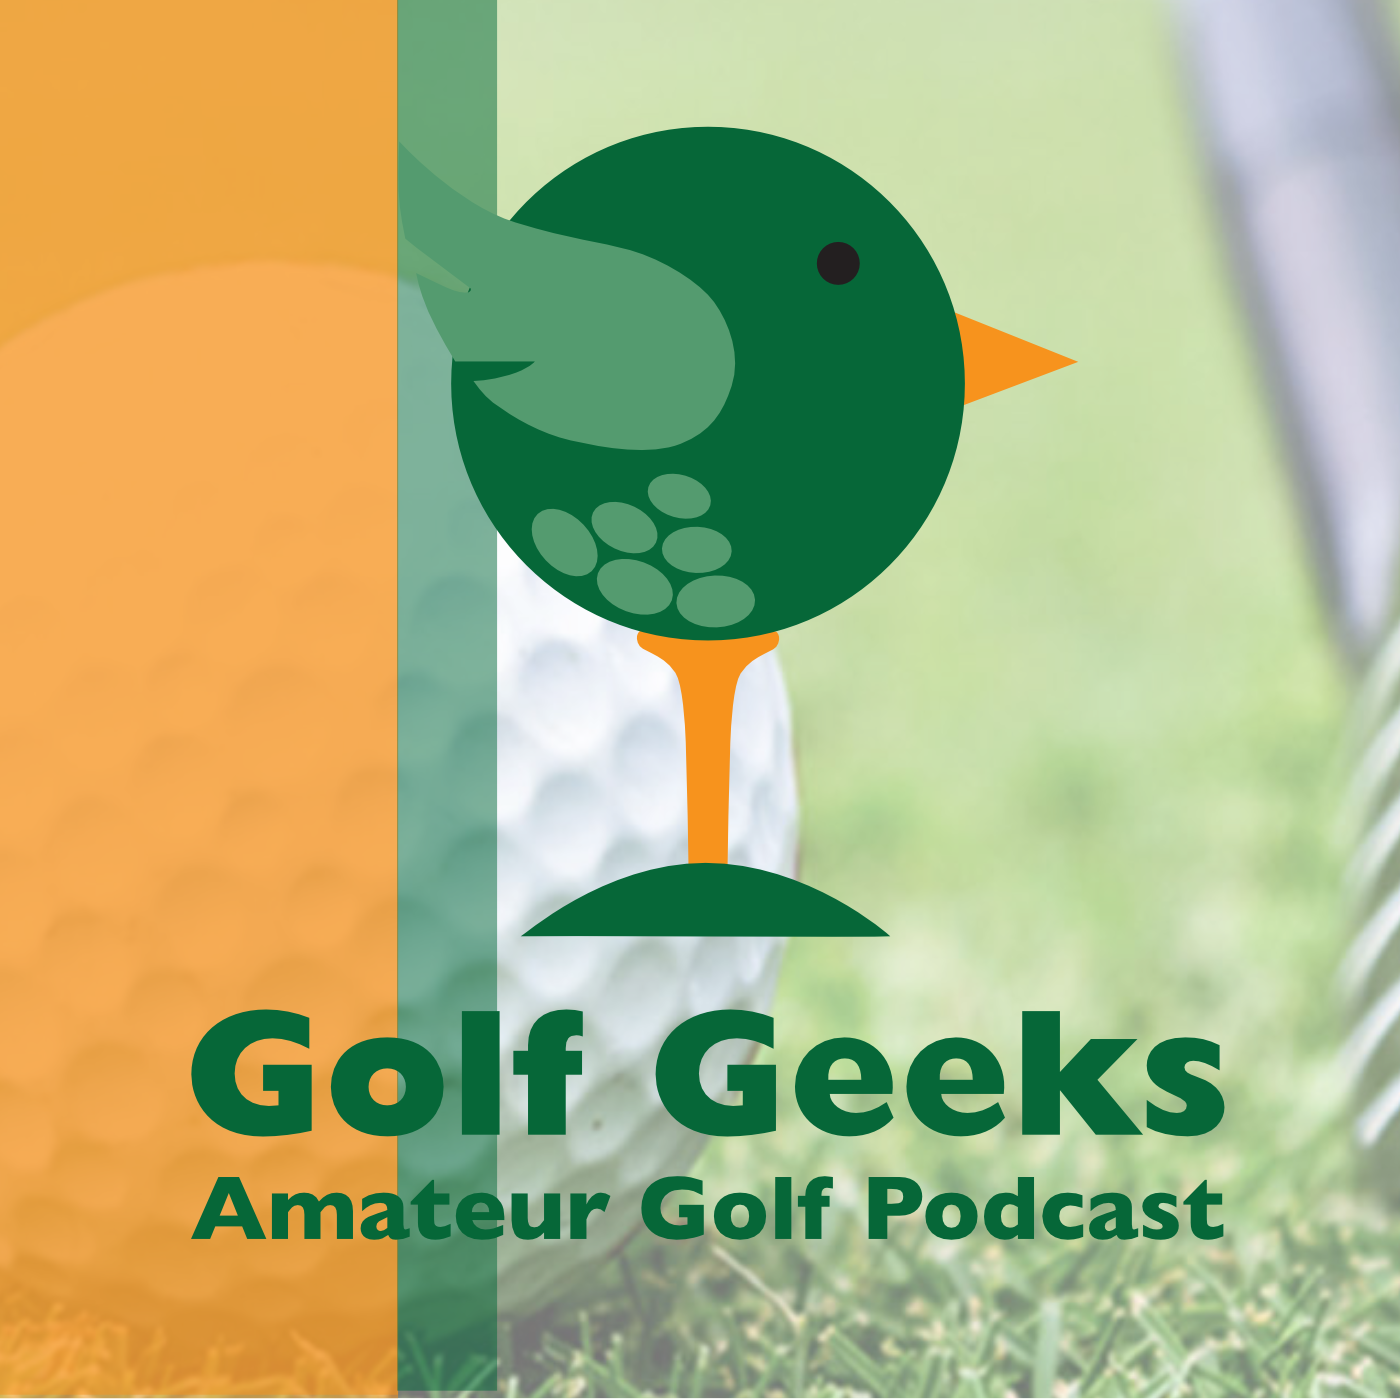 Golf Geeks Amateur Golf Podcast Episode 2